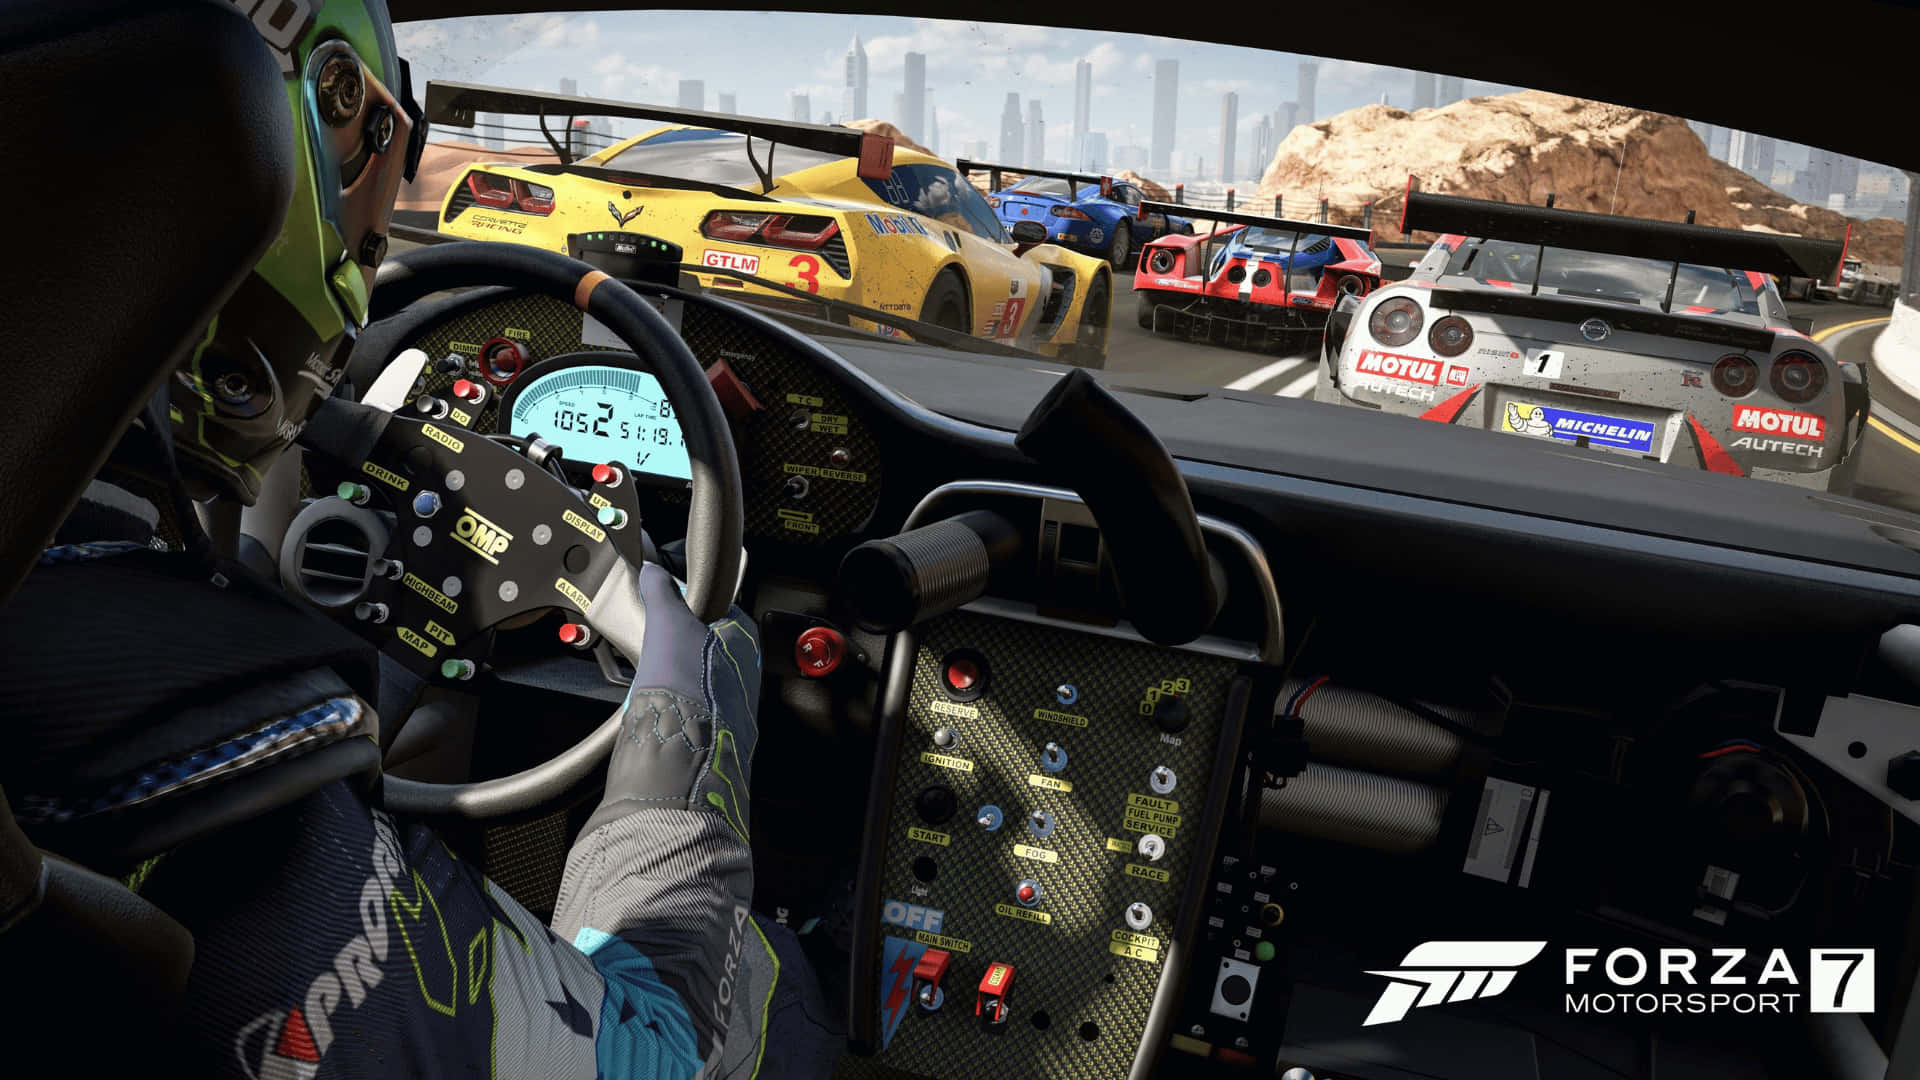 Corriattraverso Percorsi Entusiasmanti Con Incredibile Fedeltà Visiva In Forza Motorsport 7.